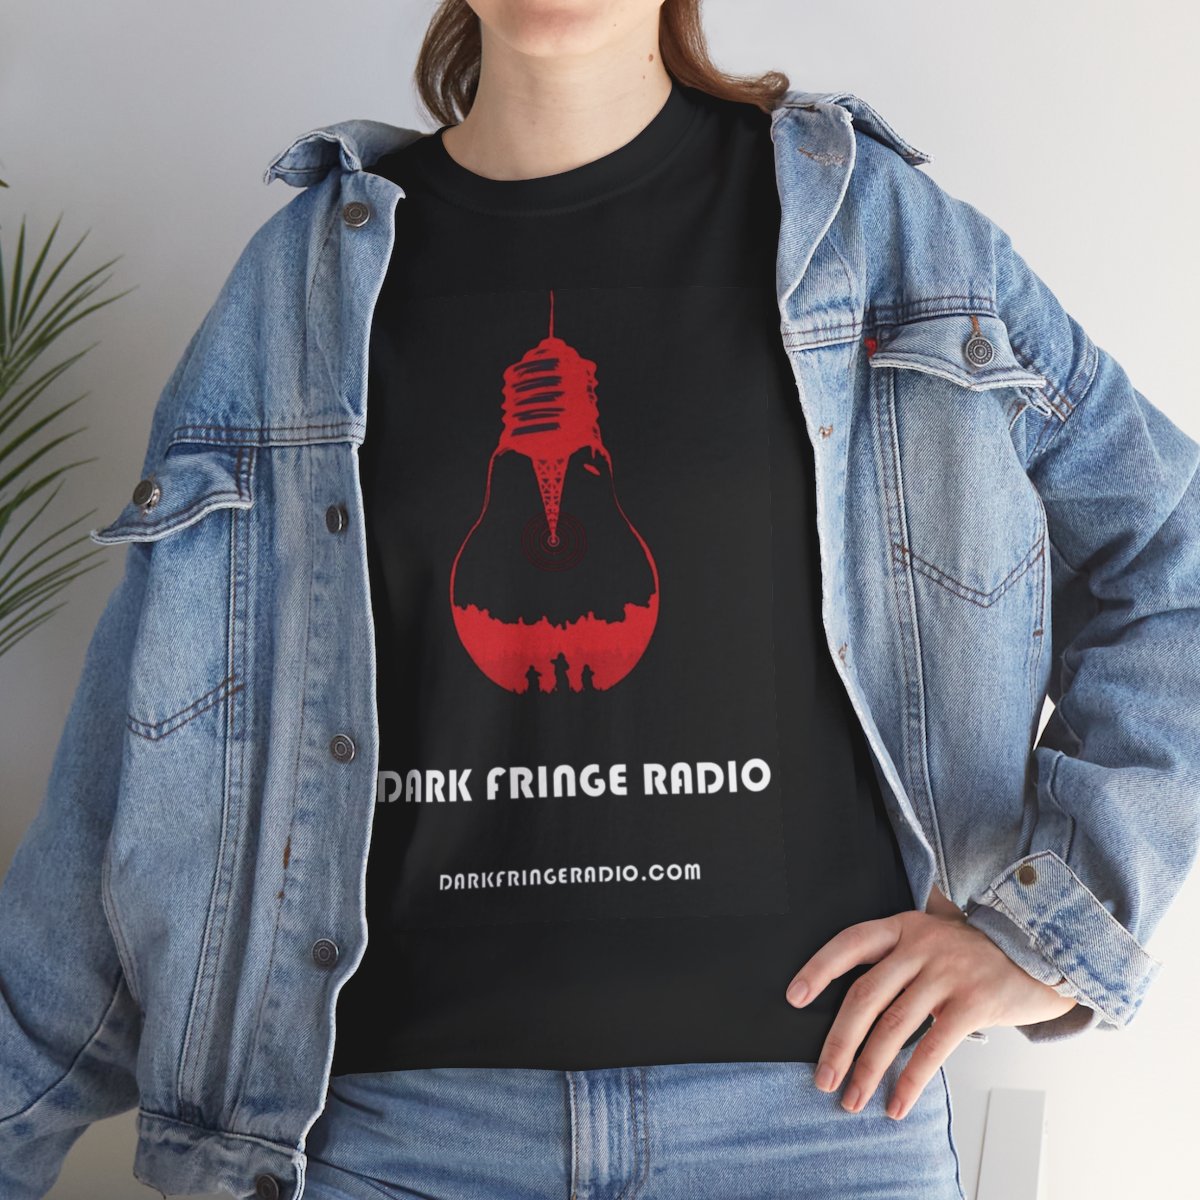 Dark Fringe Radio "The Signal" T-Shirt product thumbnail image